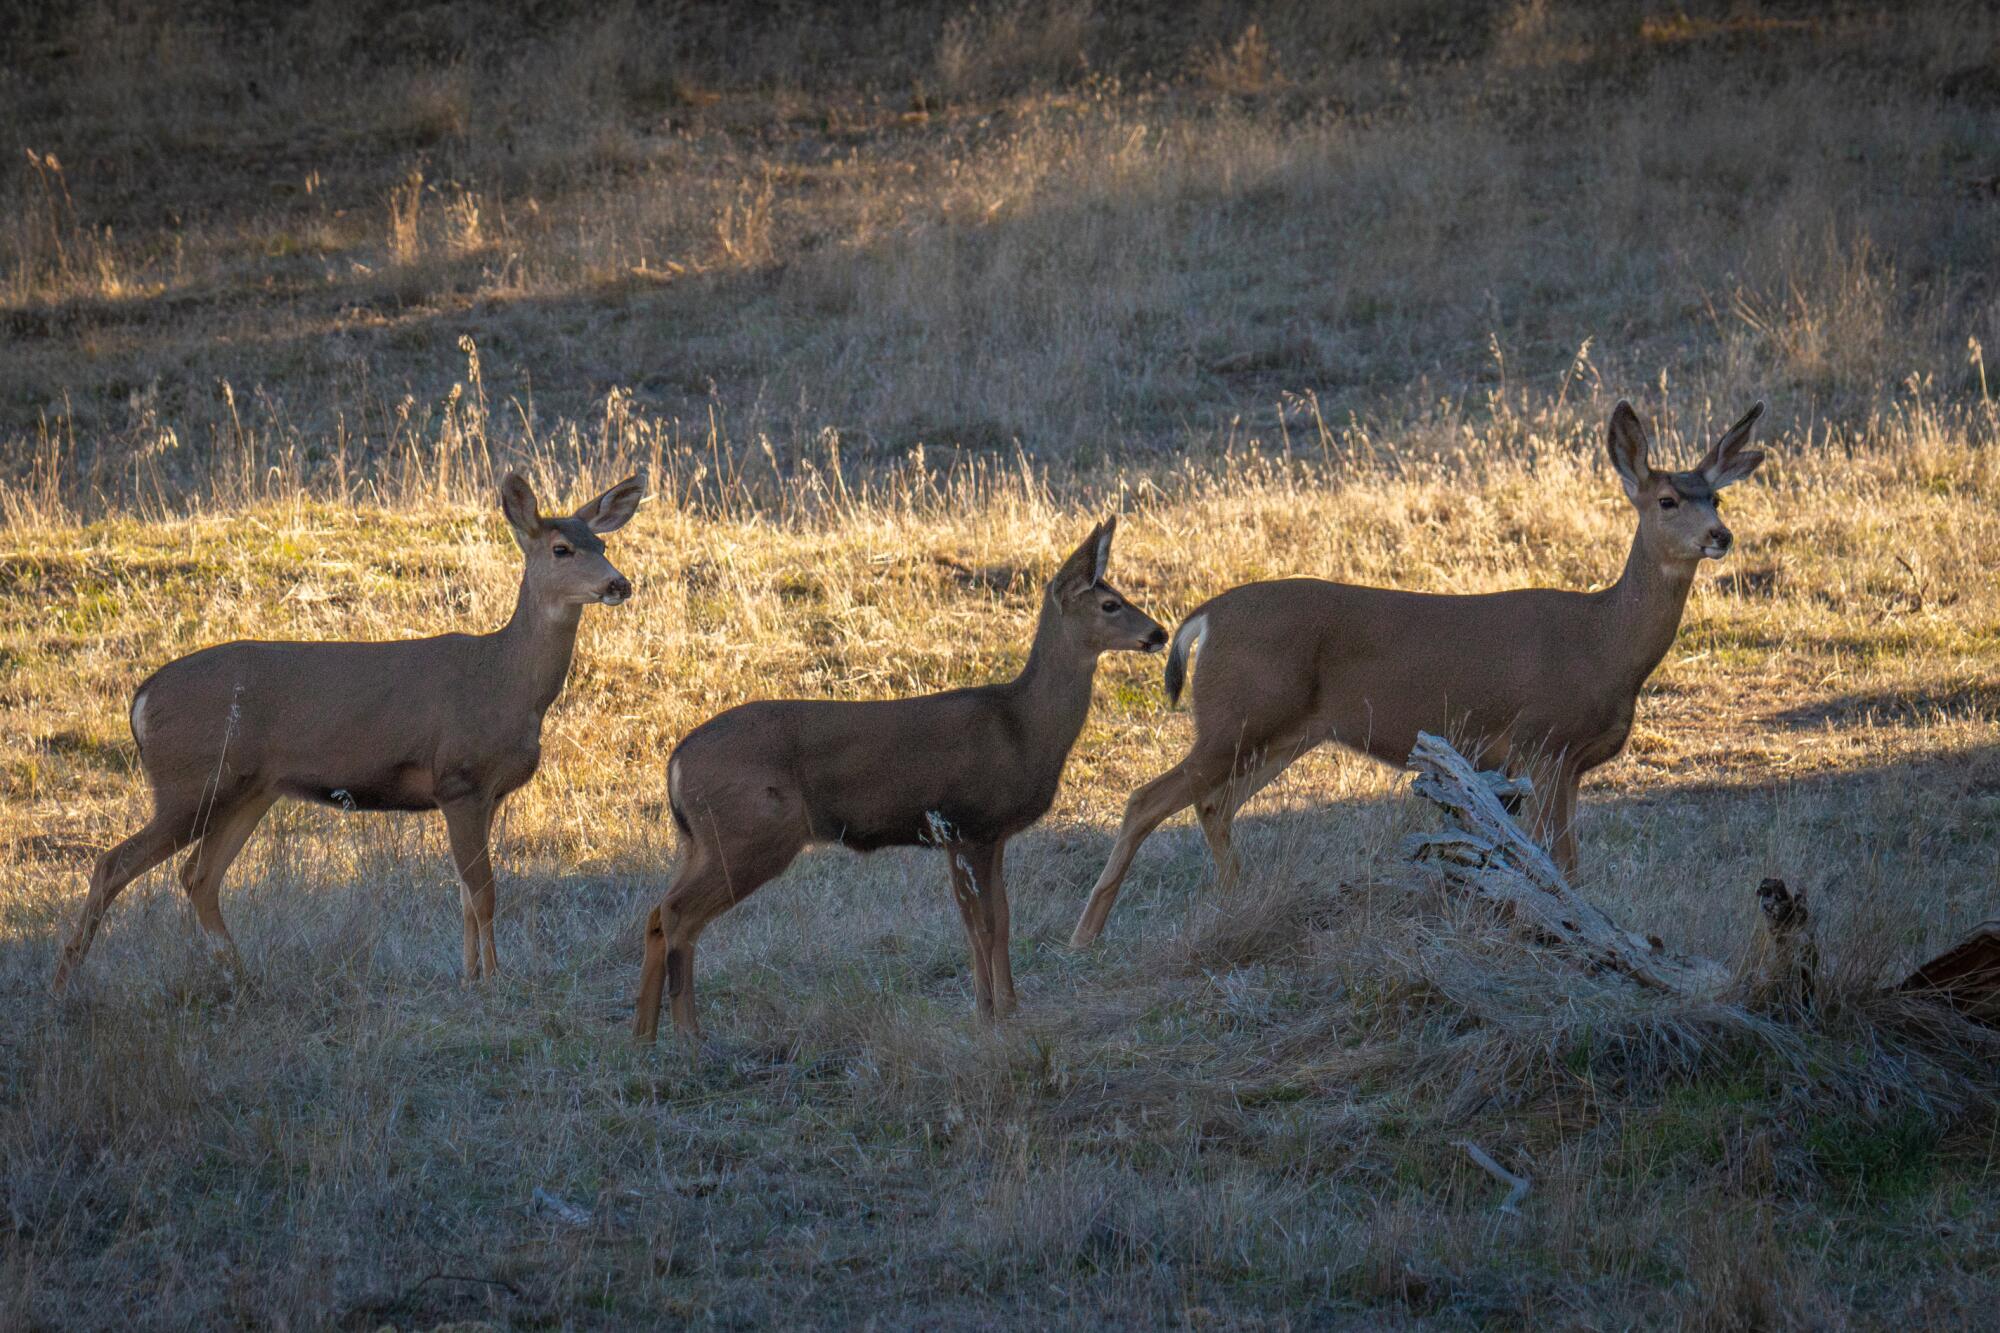 Three wild deer in an open area